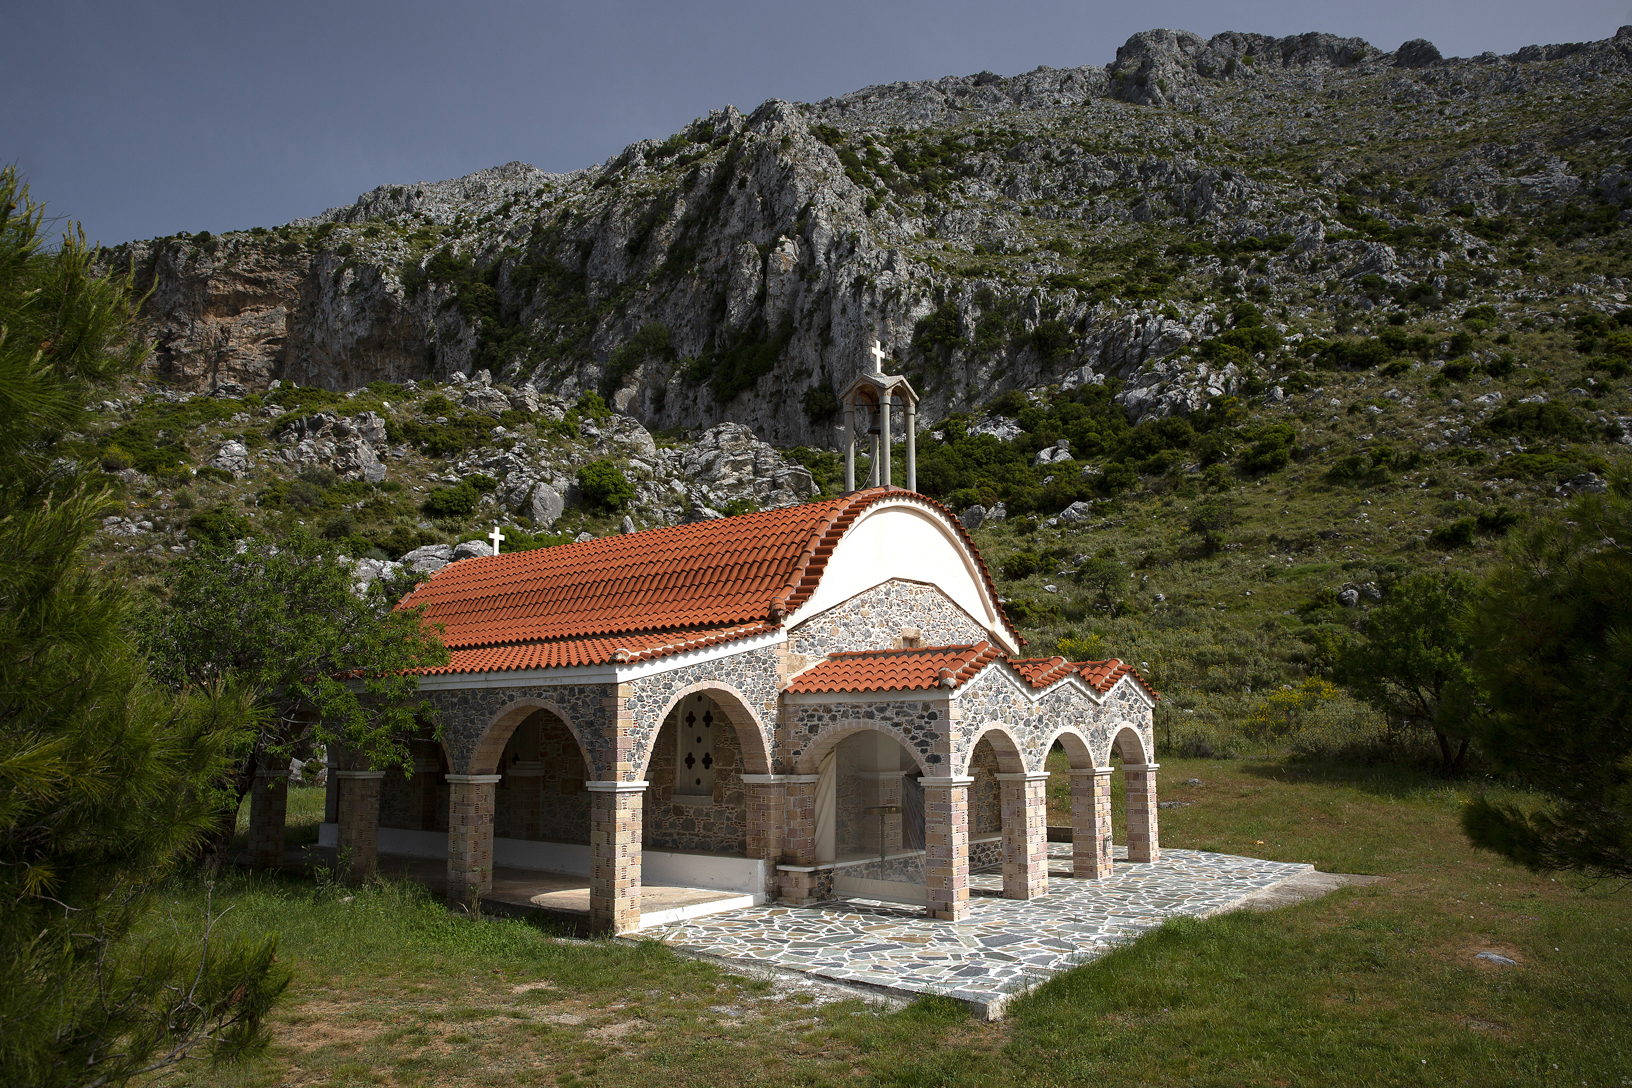 Εκκλησία Ζωοδόχου Πηγής στη θέση Τσούκα, χωριό Οκτωνιά. Φωτογραφία: ©Βασίλης Συκάς, για τον Δήμο Κύμης-Αλιβερίου